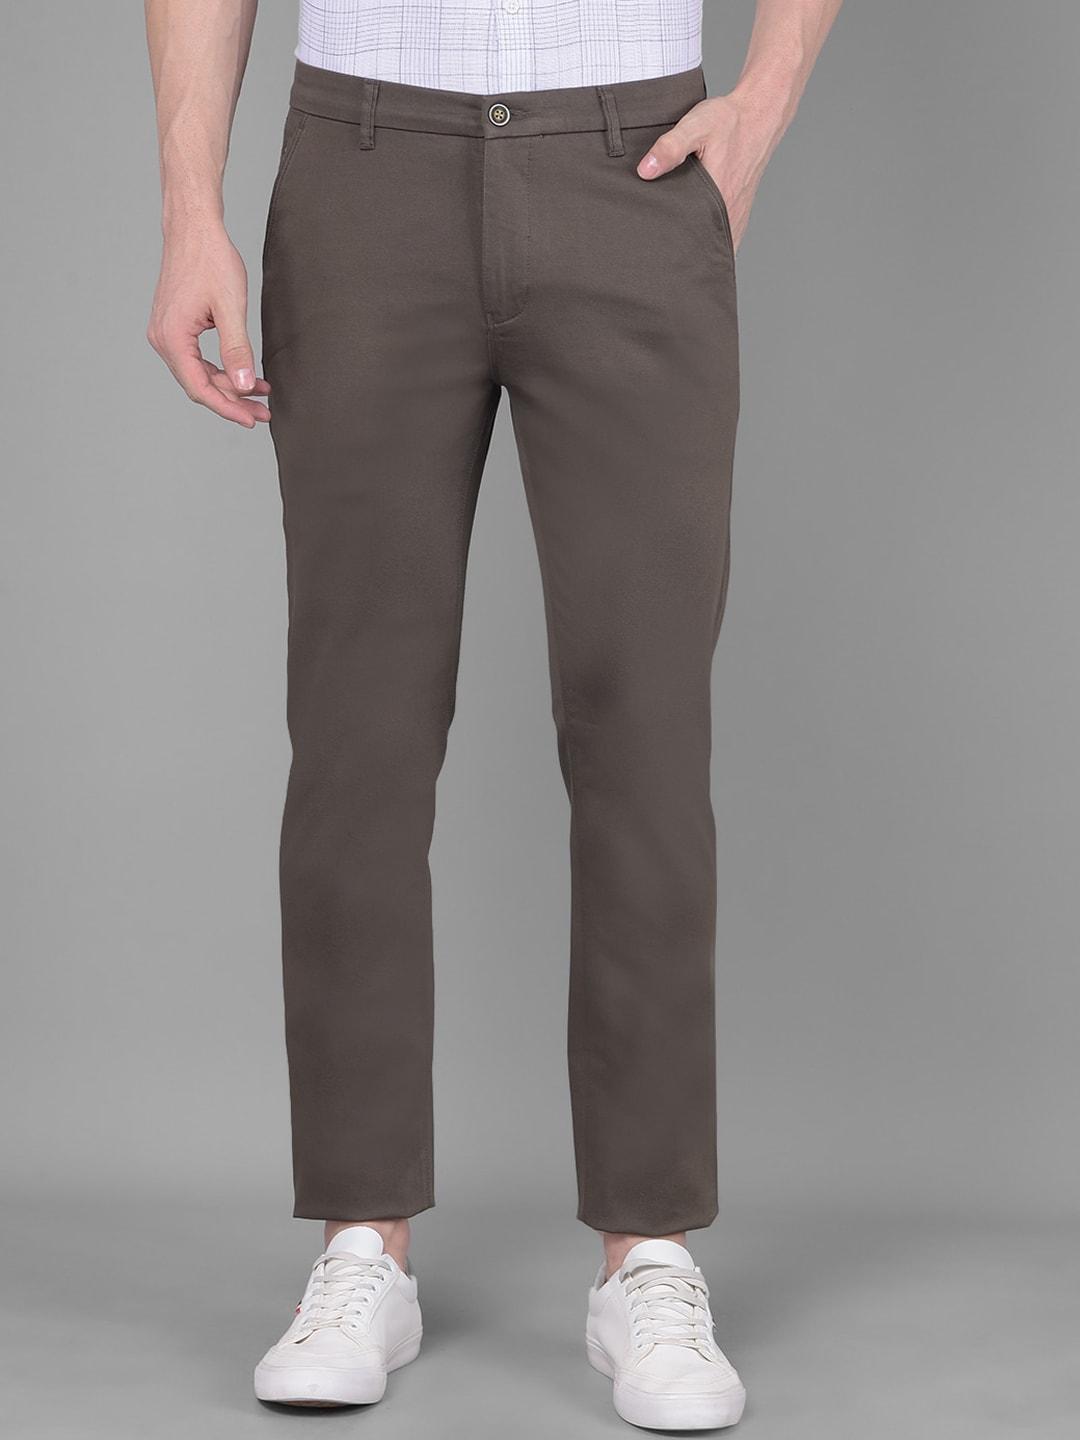 crimsoune-club-men-original-mid-rise-chinos-trouser